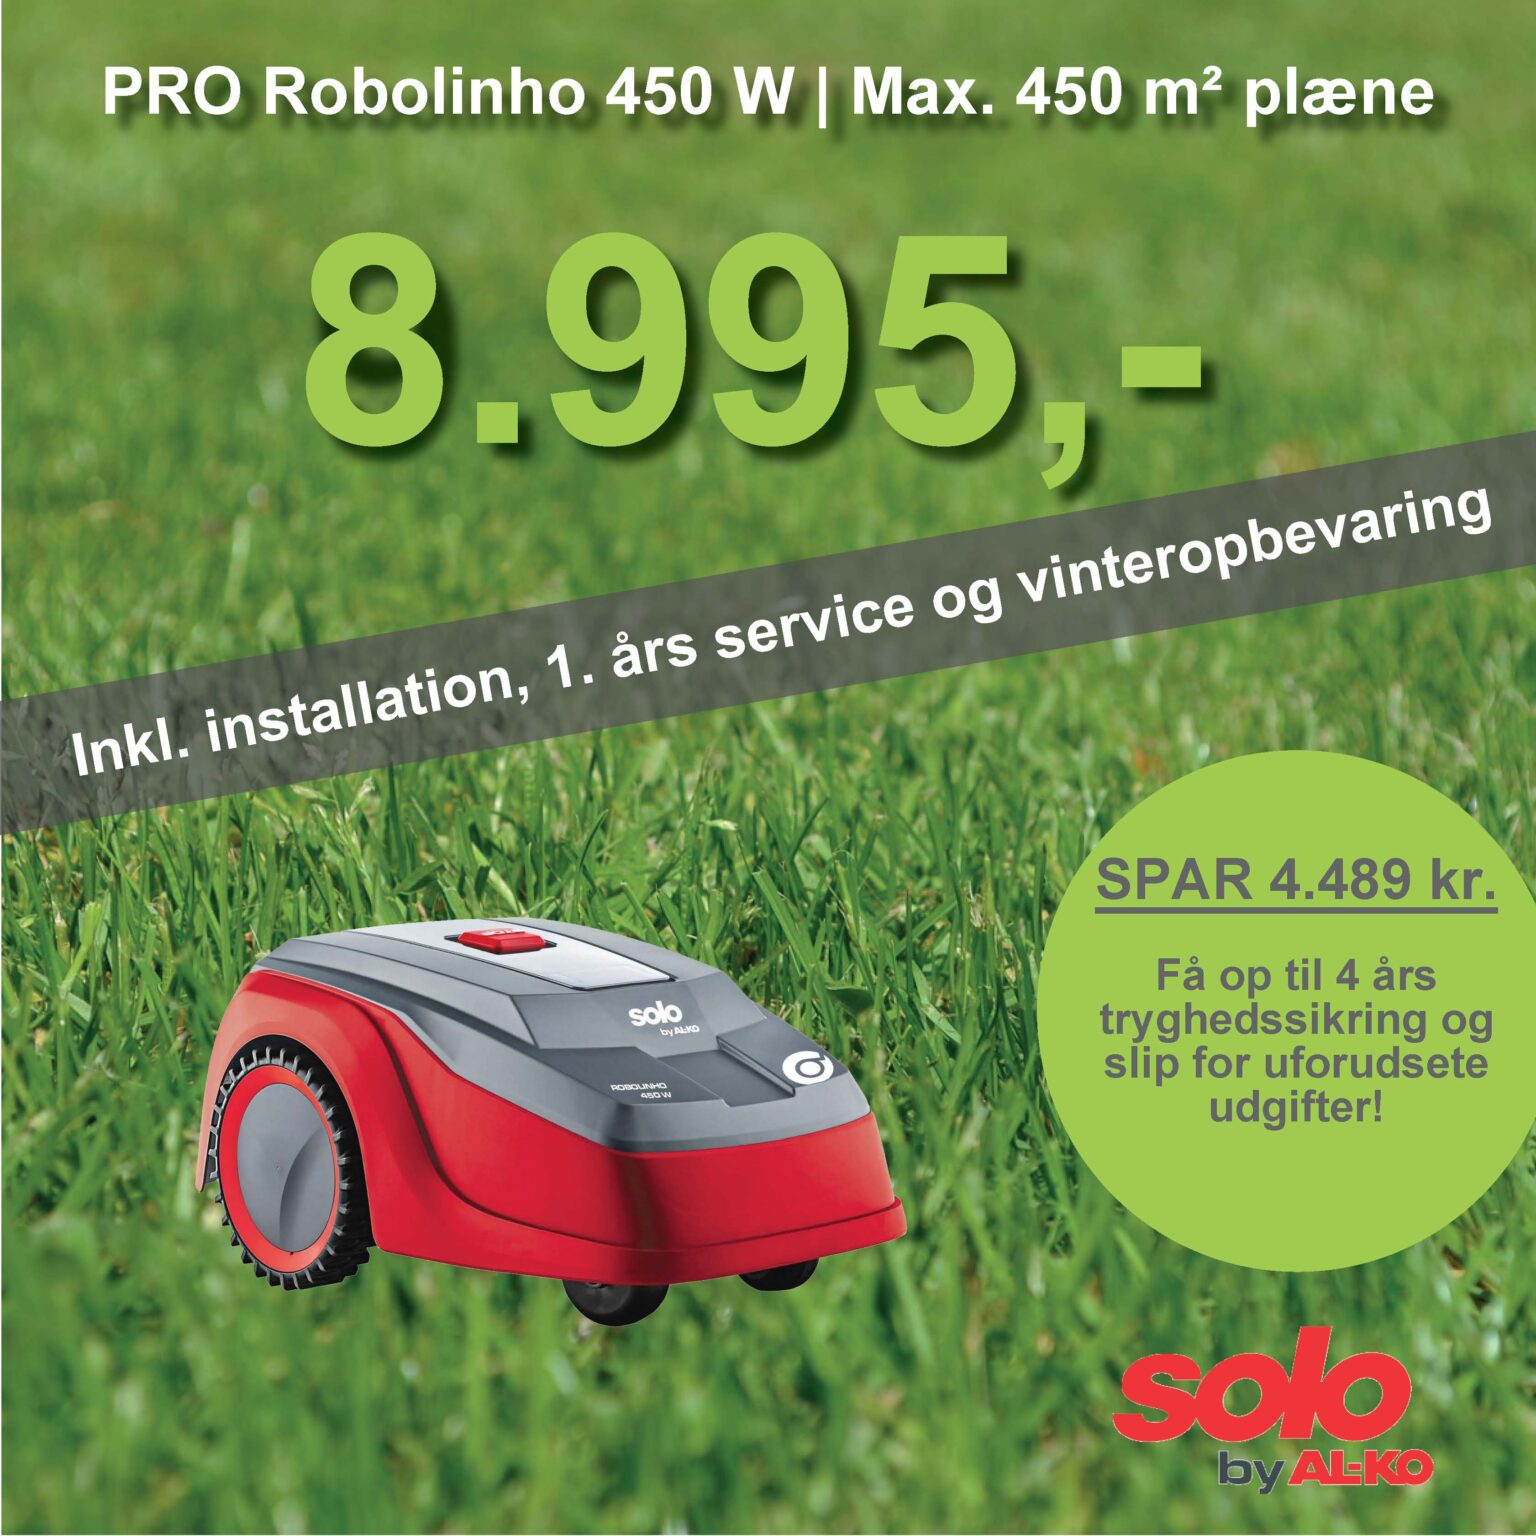 Solo robotplæneklipper Premium PRO Robolinho 450W - 450m2 inkl. installation, 1. års service og vinteropbevaring.